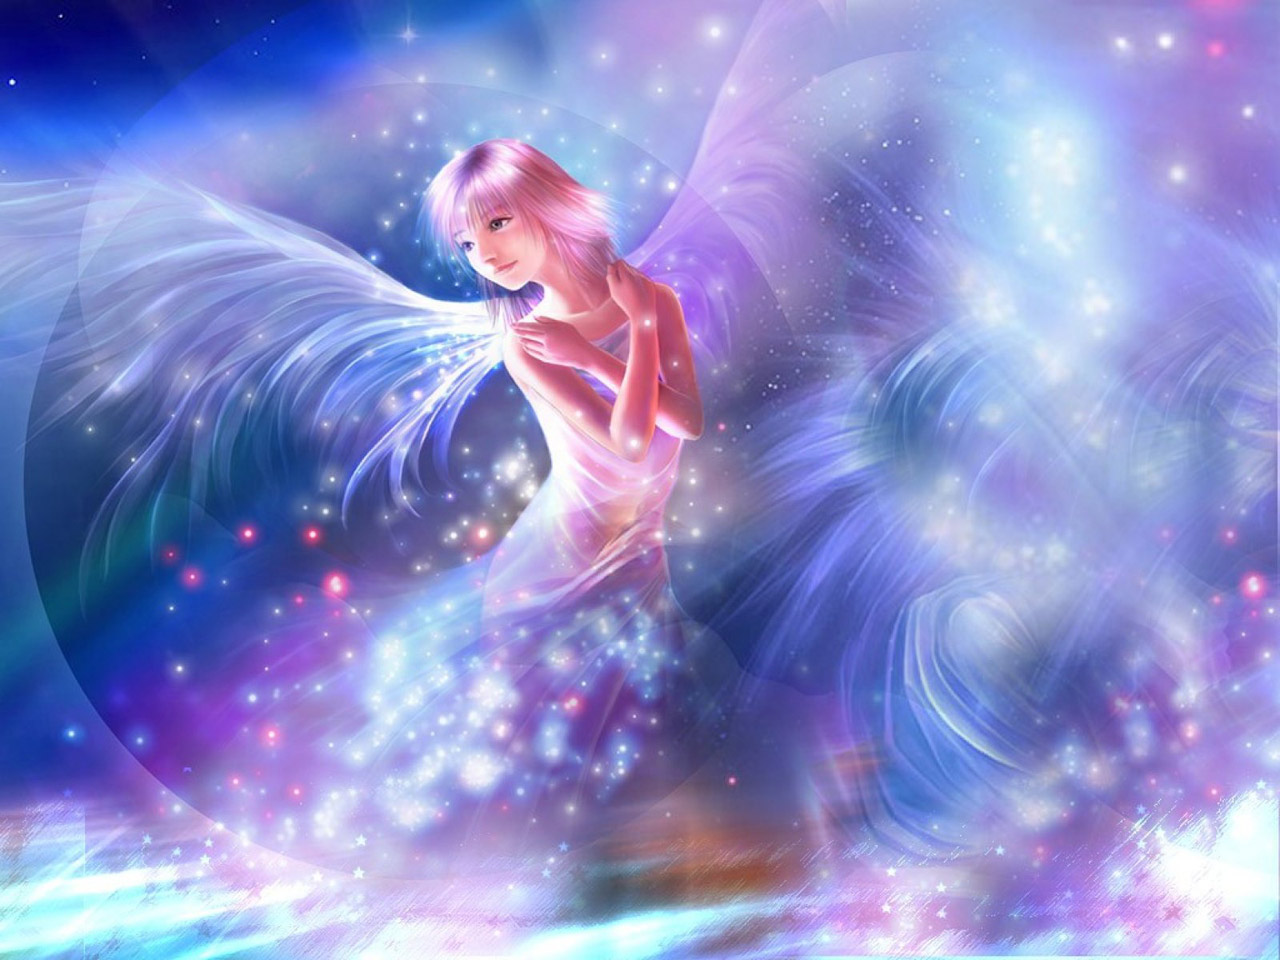 Desktop Wallpaper Of Shining Angel Fantasy